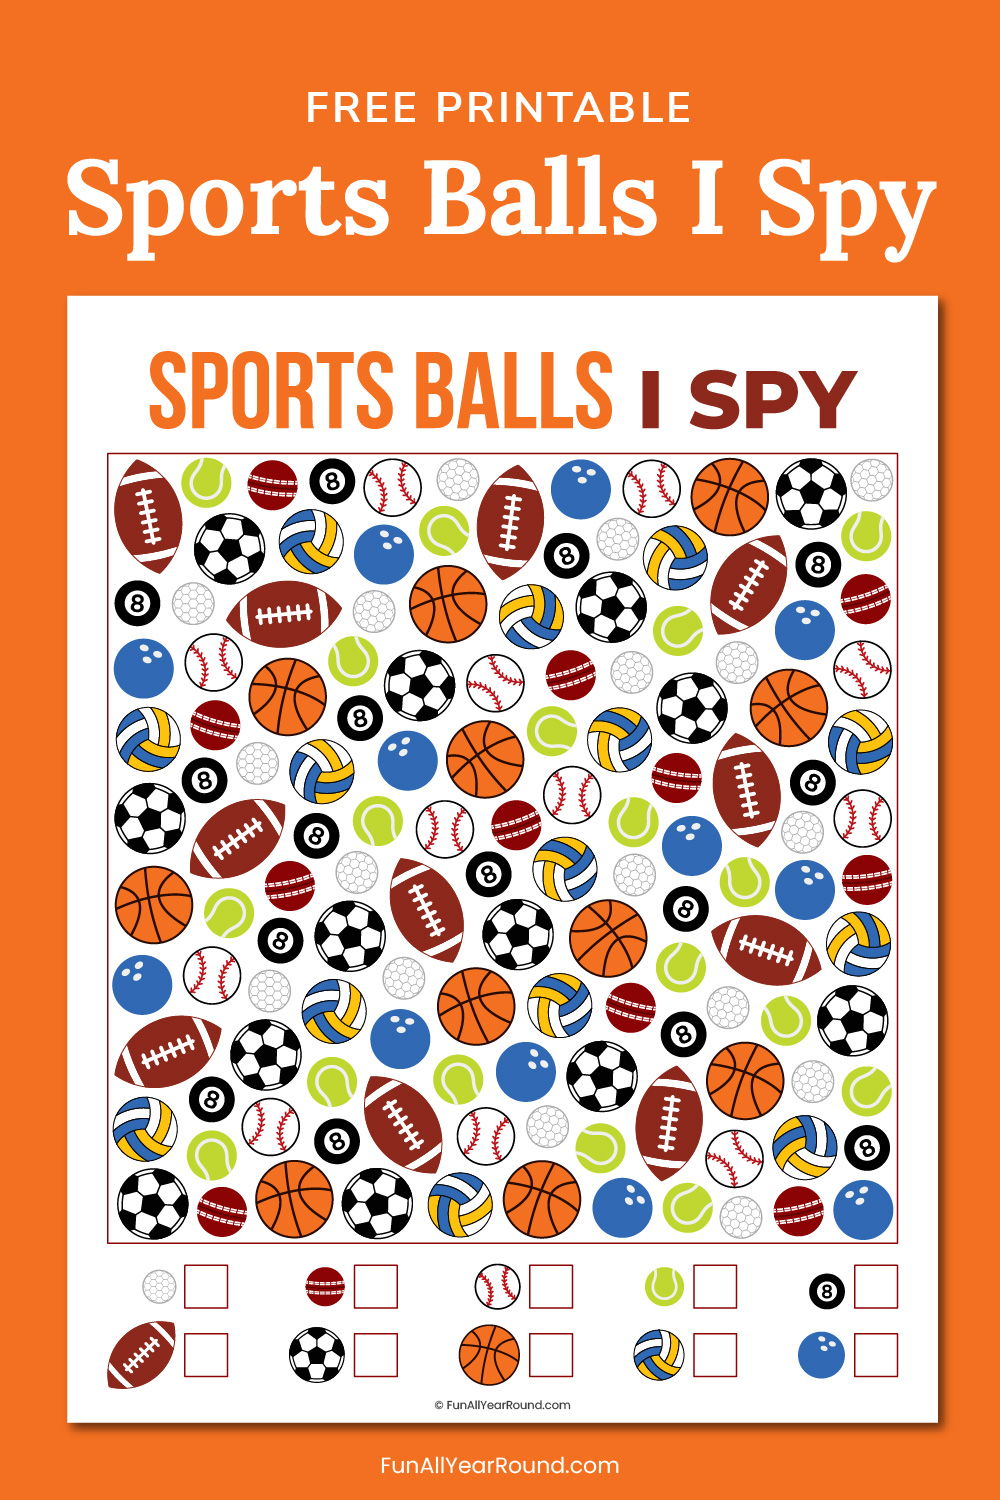 Sports balls I spy